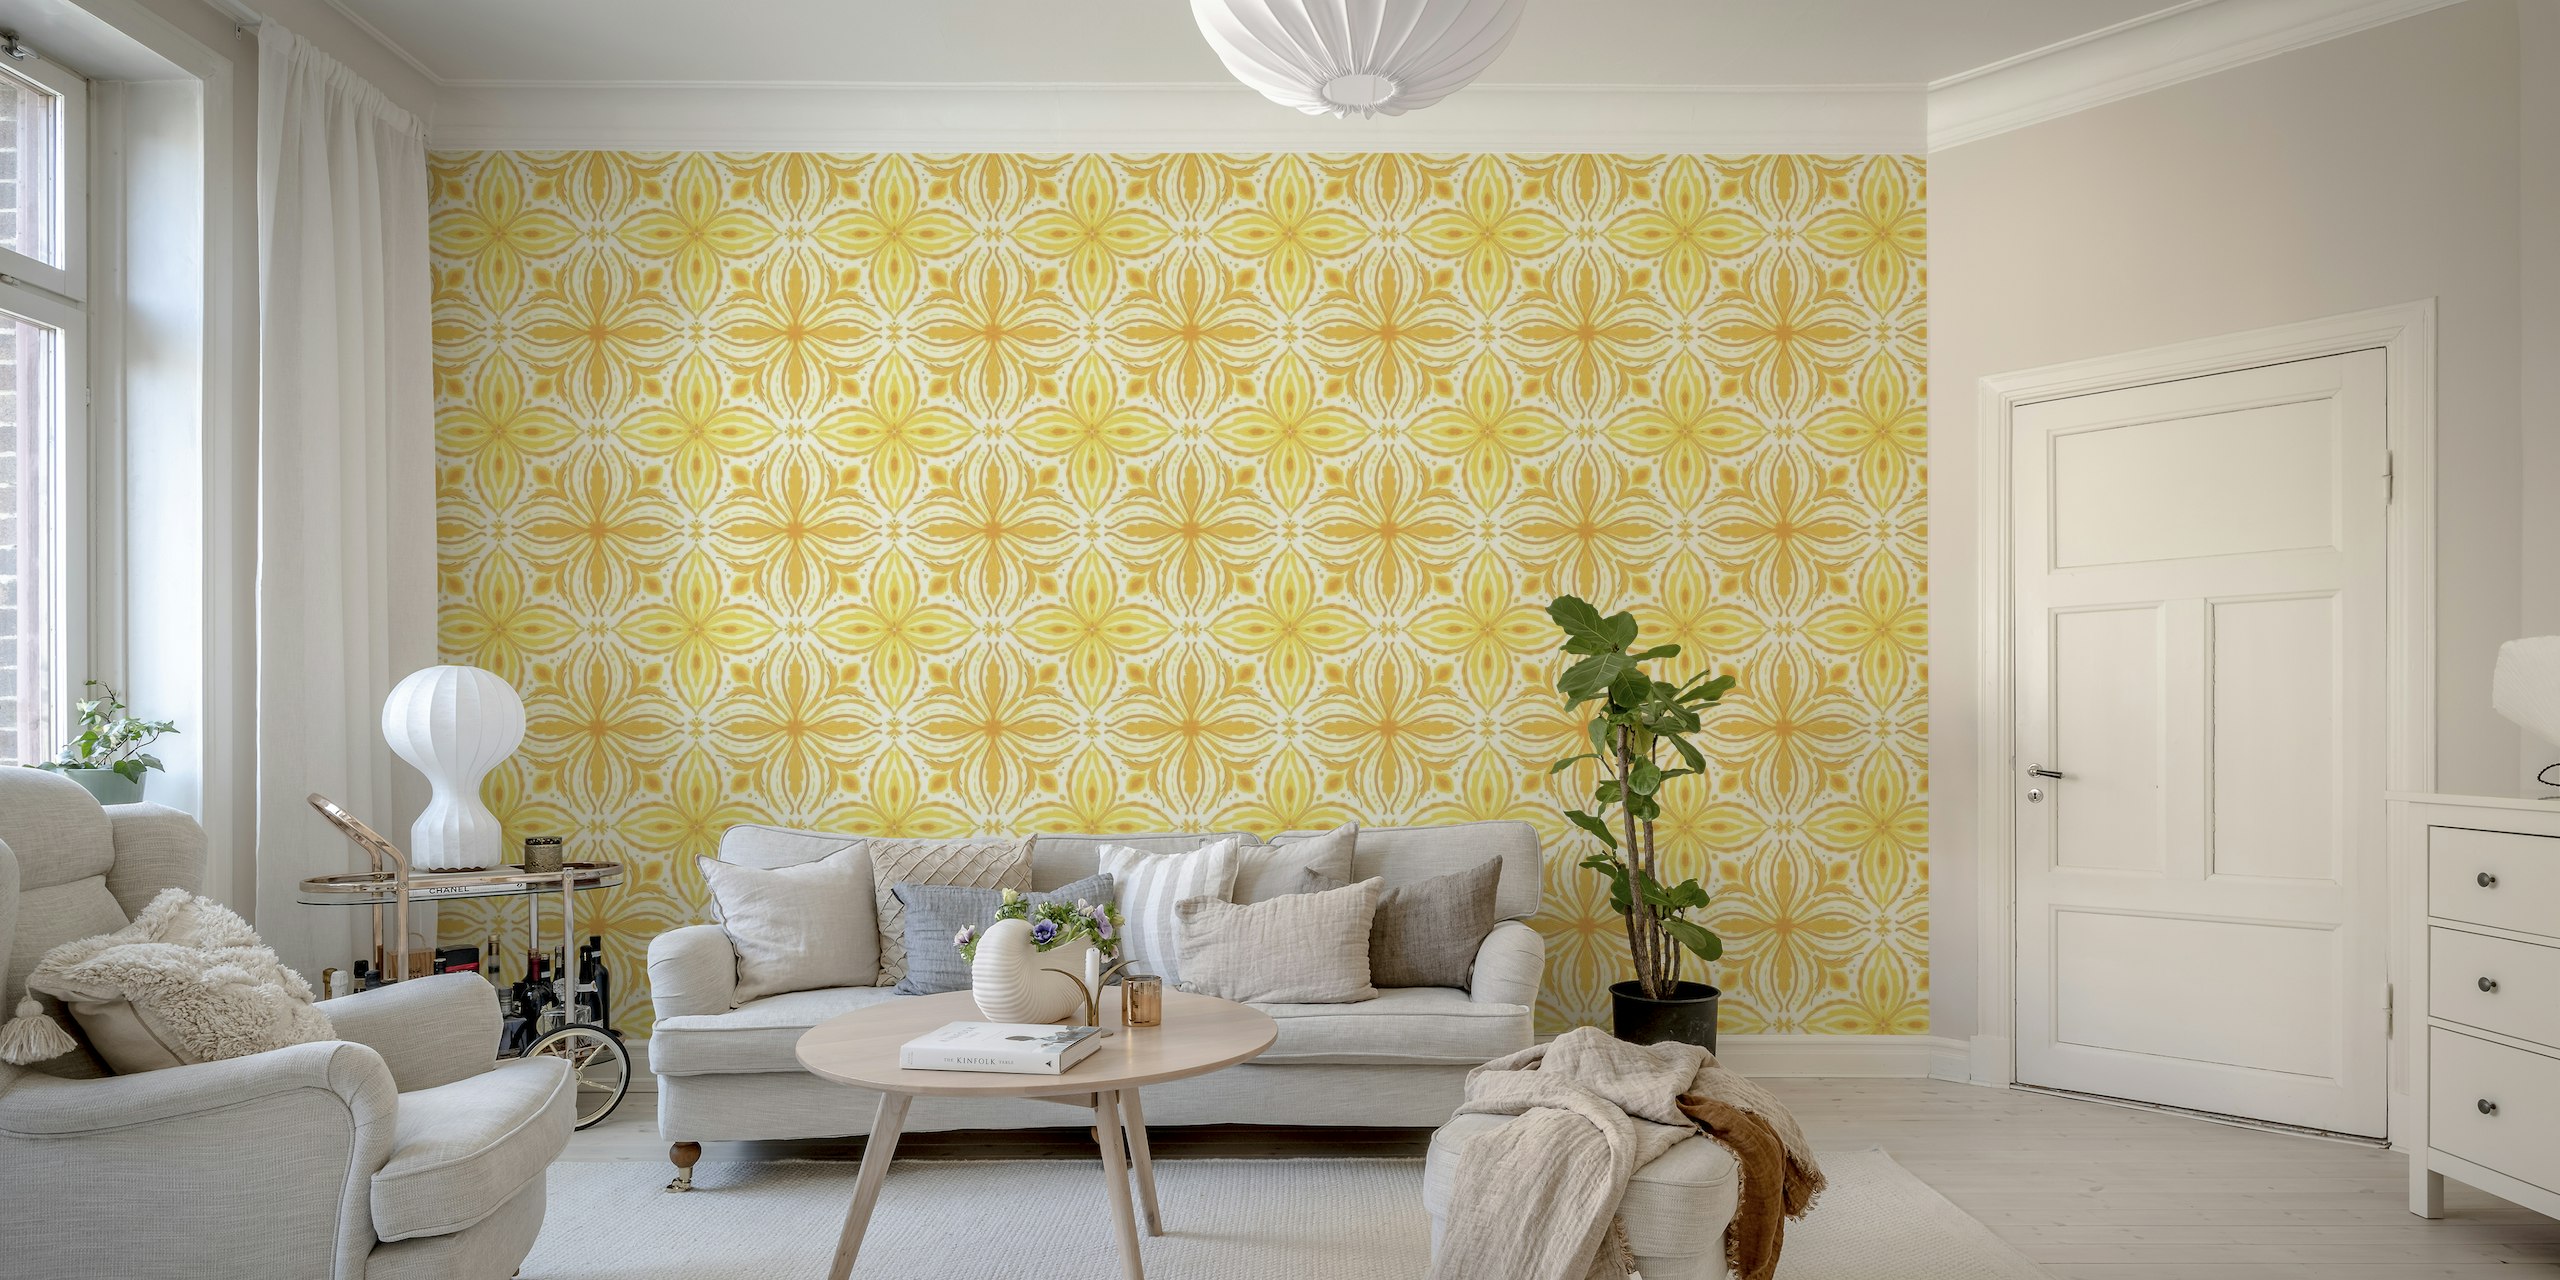 Ornate tiles, yellow and orange 9 papel pintado